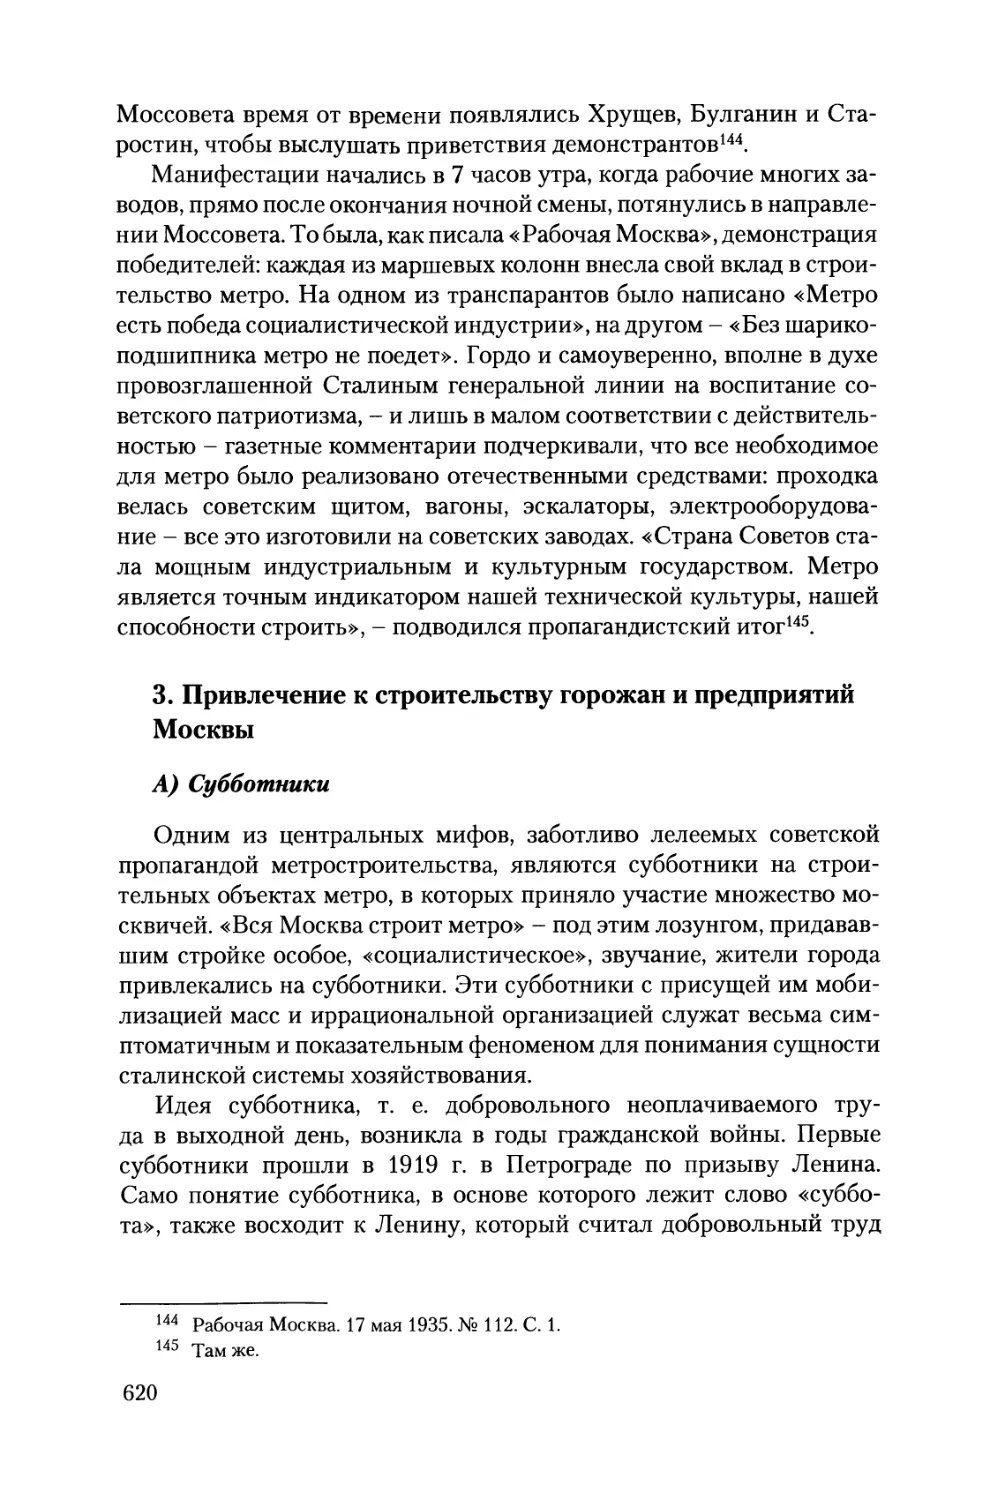 3. Привлечение к строительству горожан и предприятий Москвы